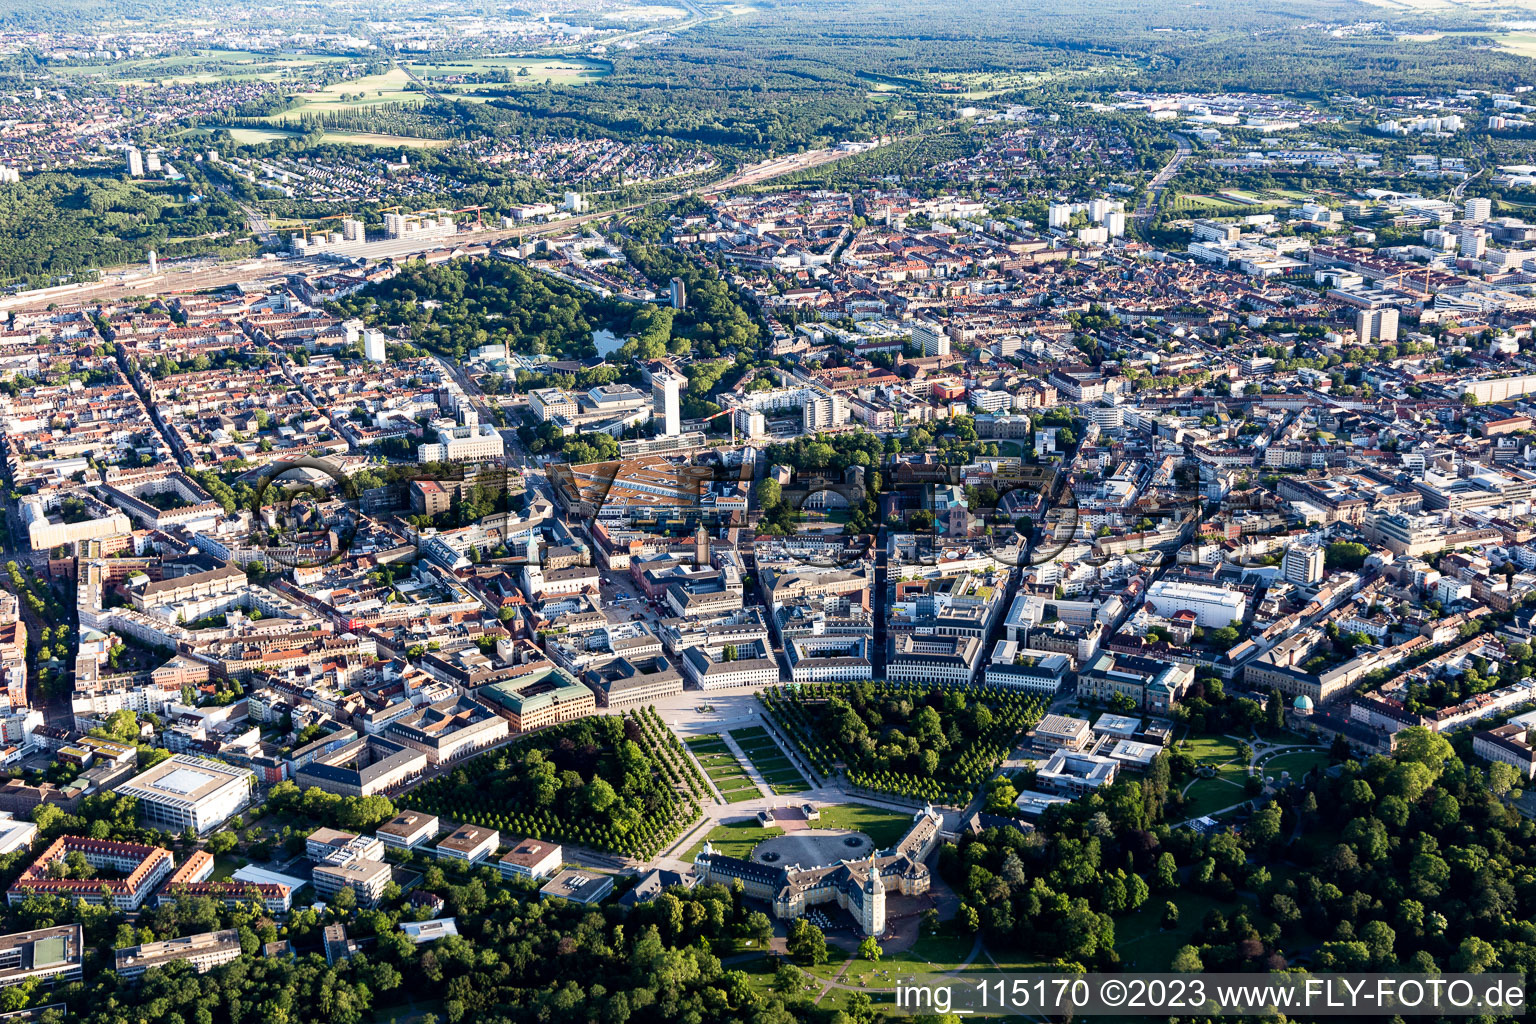 Quartier Innenstadt-West in Karlsruhe dans le département Bade-Wurtemberg, Allemagne depuis l'avion